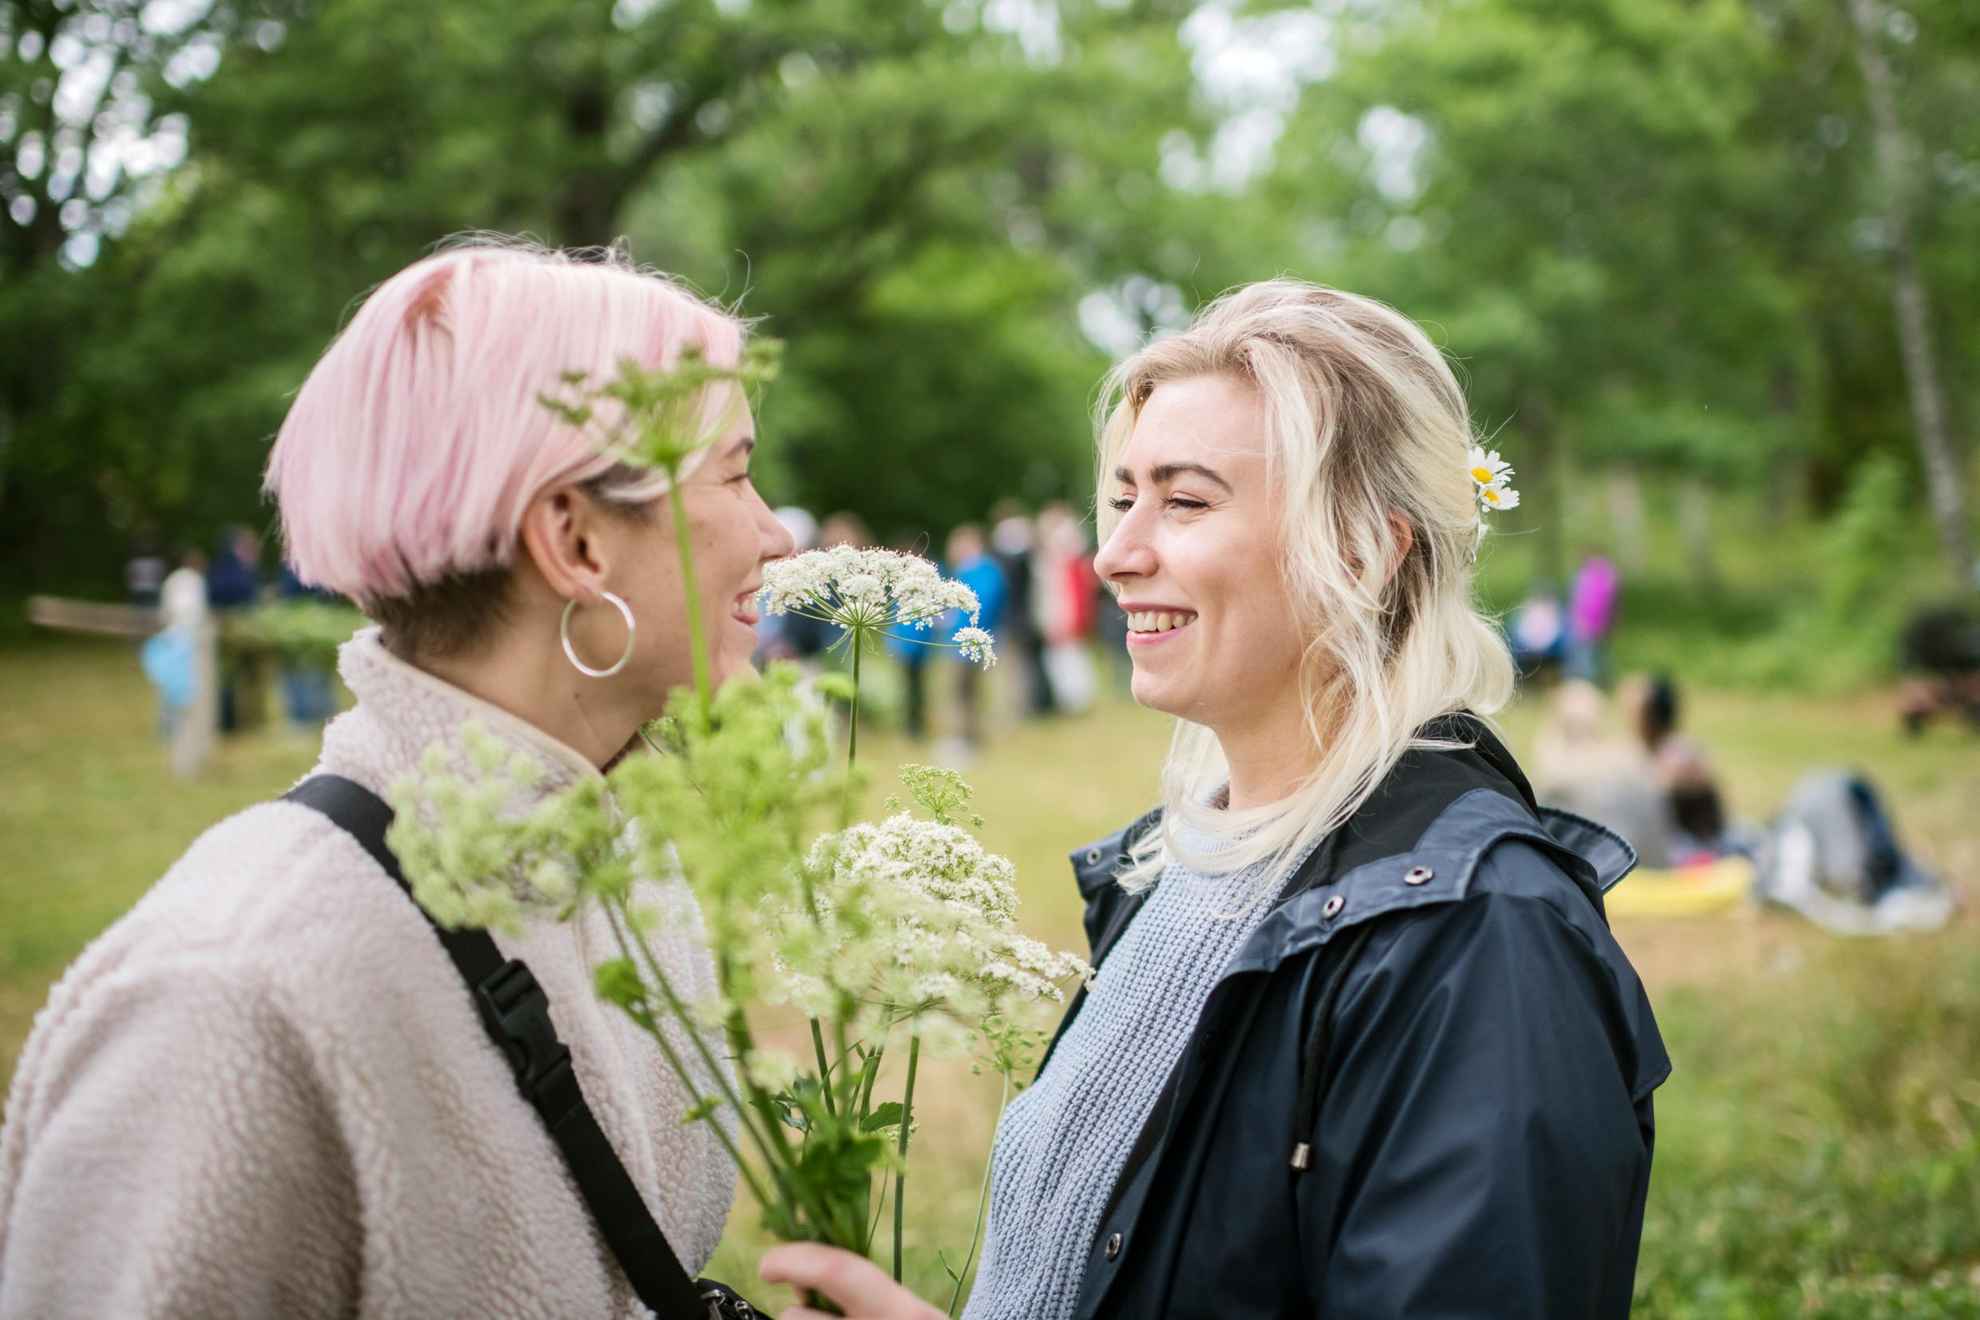 Twee vrouwen met bloemen in hun handen glimlachen naar elkaar.